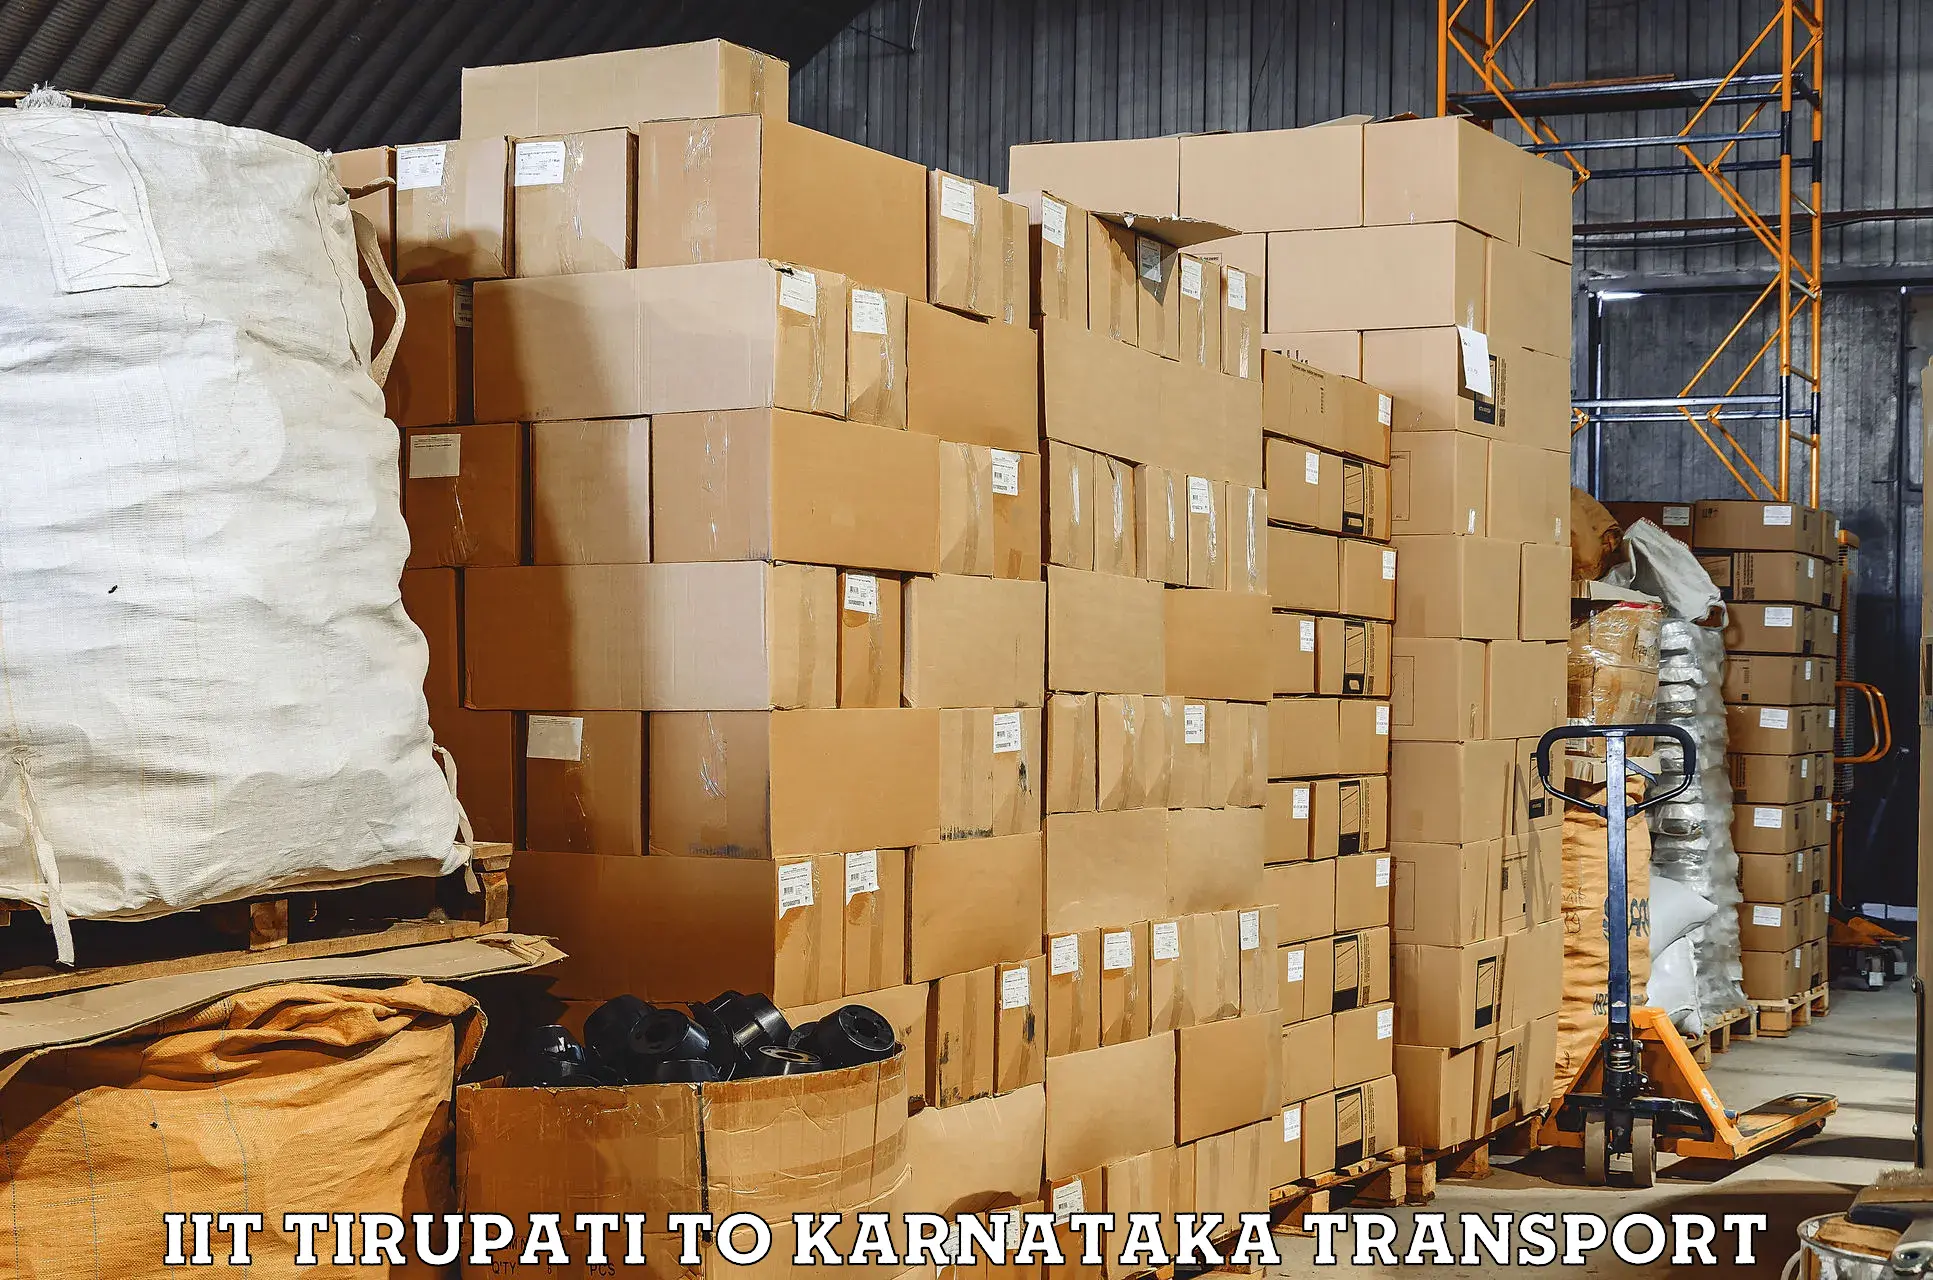 Two wheeler parcel service IIT Tirupati to Gokak